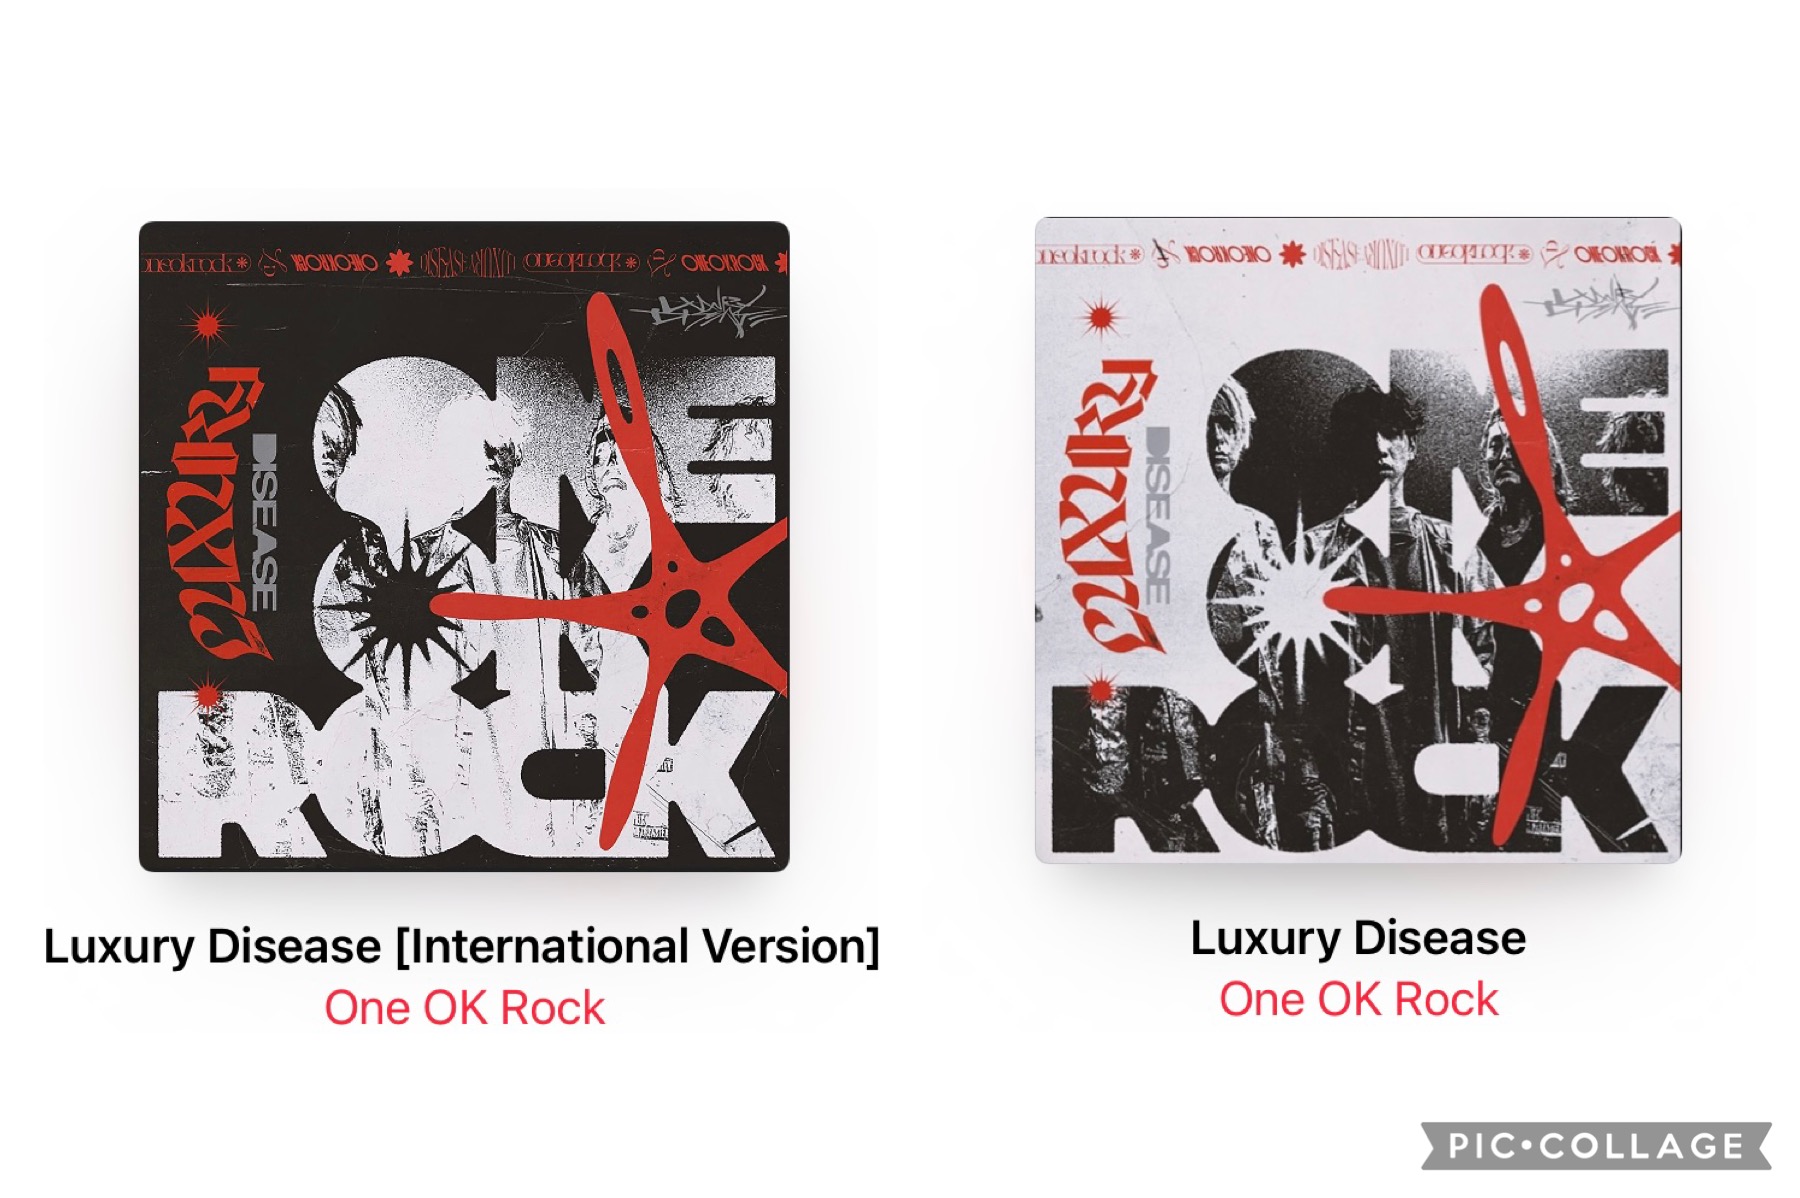 One OK Rockの新譜『Luxury Disease』の国内盤と国際盤を聴き比べると、なるほど贅沢病とは言い得て妙だなと腑に落ちる